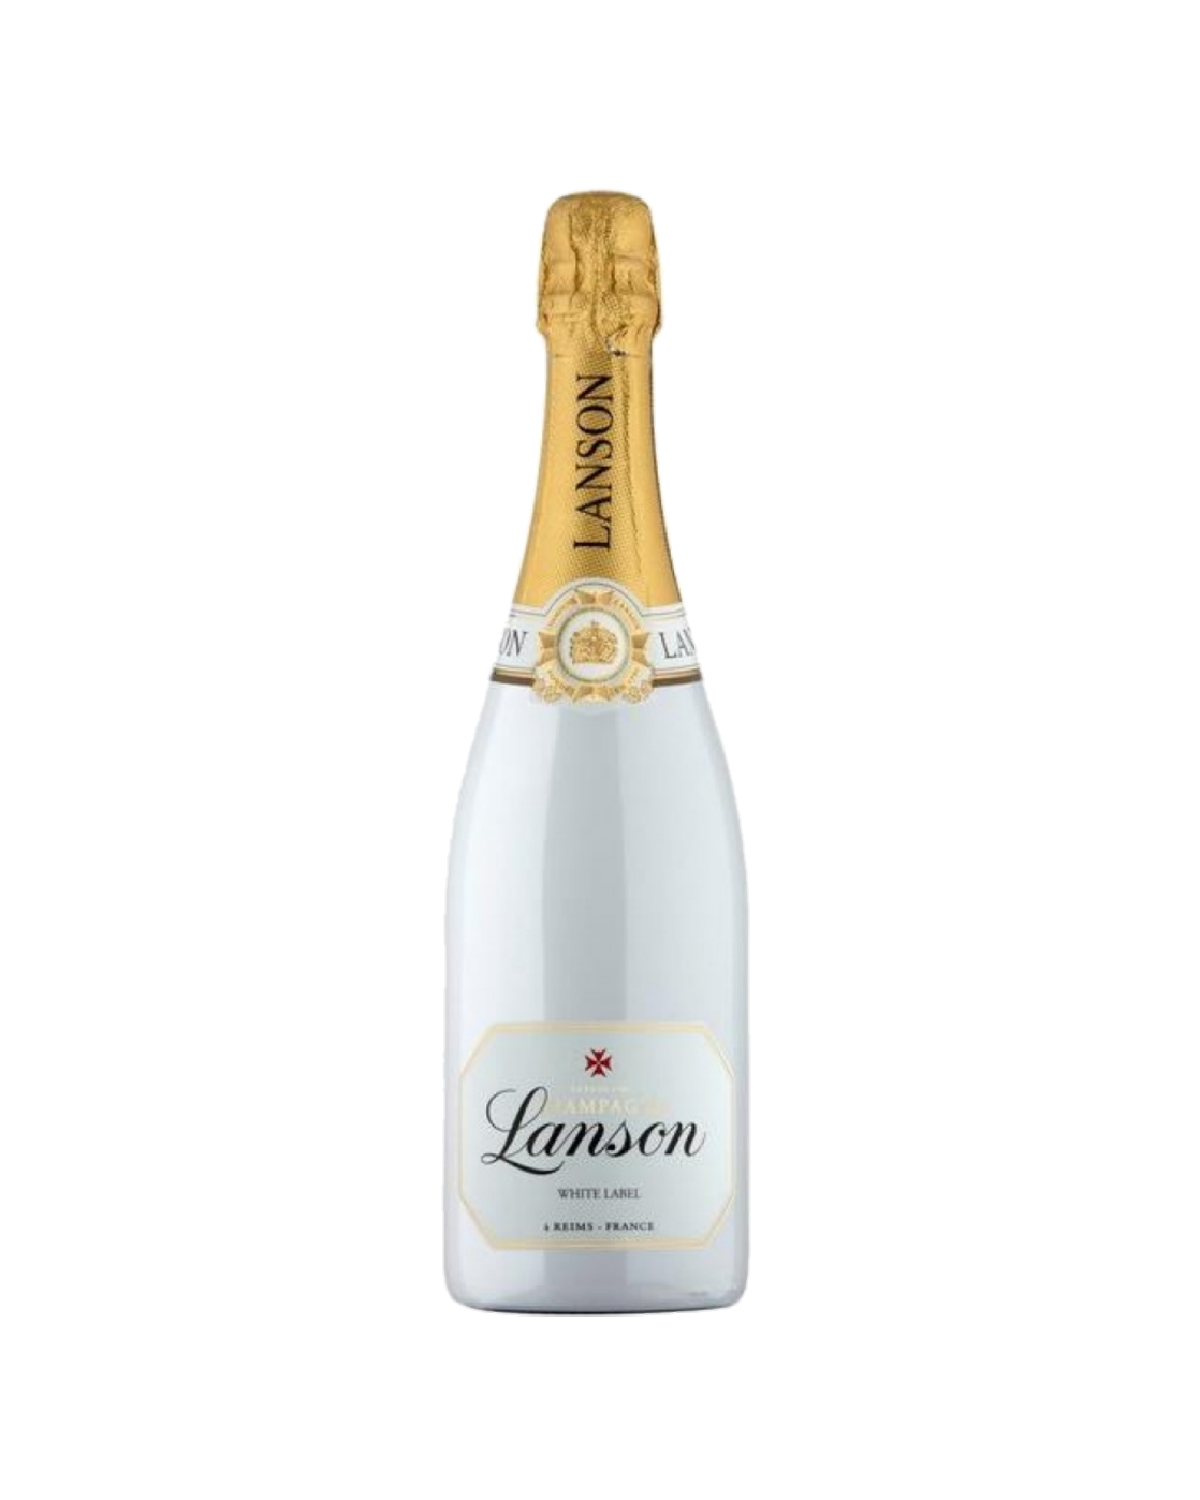 Lanson. Шампанское с белой этикеткой. Lanson шампанское. Шампанское Lanson le Vintage Brut в подарочной коробке 2012 750 мл 12,5%.